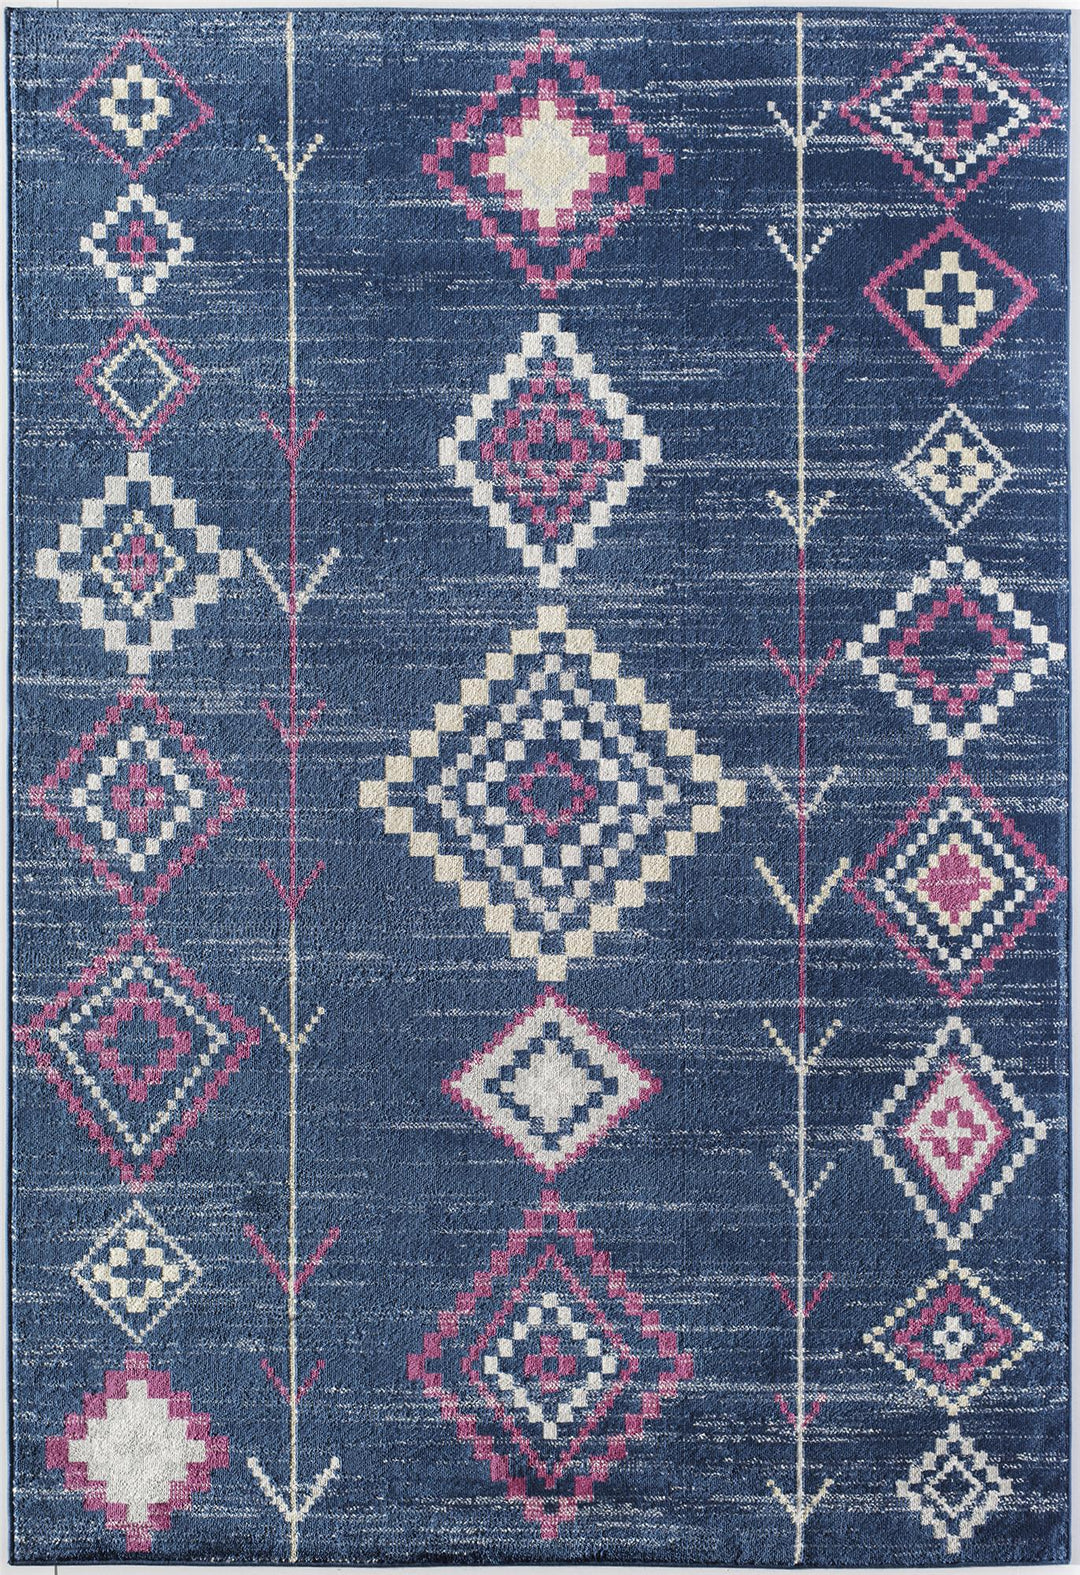 Sahara desert-themed rugs -  Blue  -  8'0"x10'0"